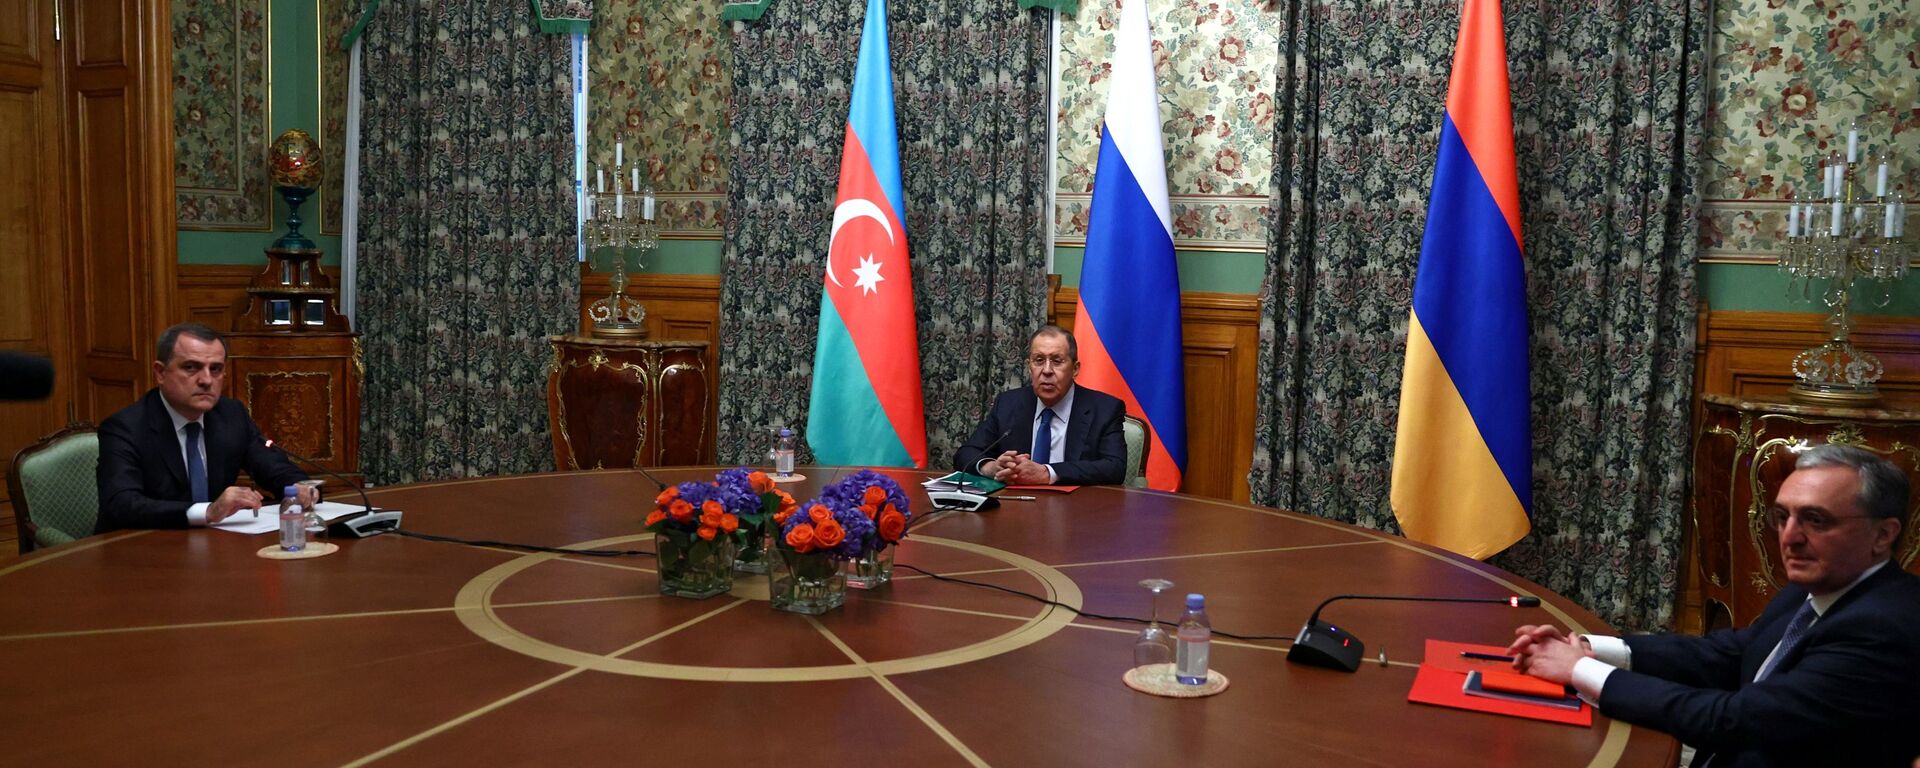 Las negociaciones entre los cancilleres de Rusia, Armenia y Azerbaiyán sobre Karabaj  - Sputnik Mundo, 1920, 25.04.2022